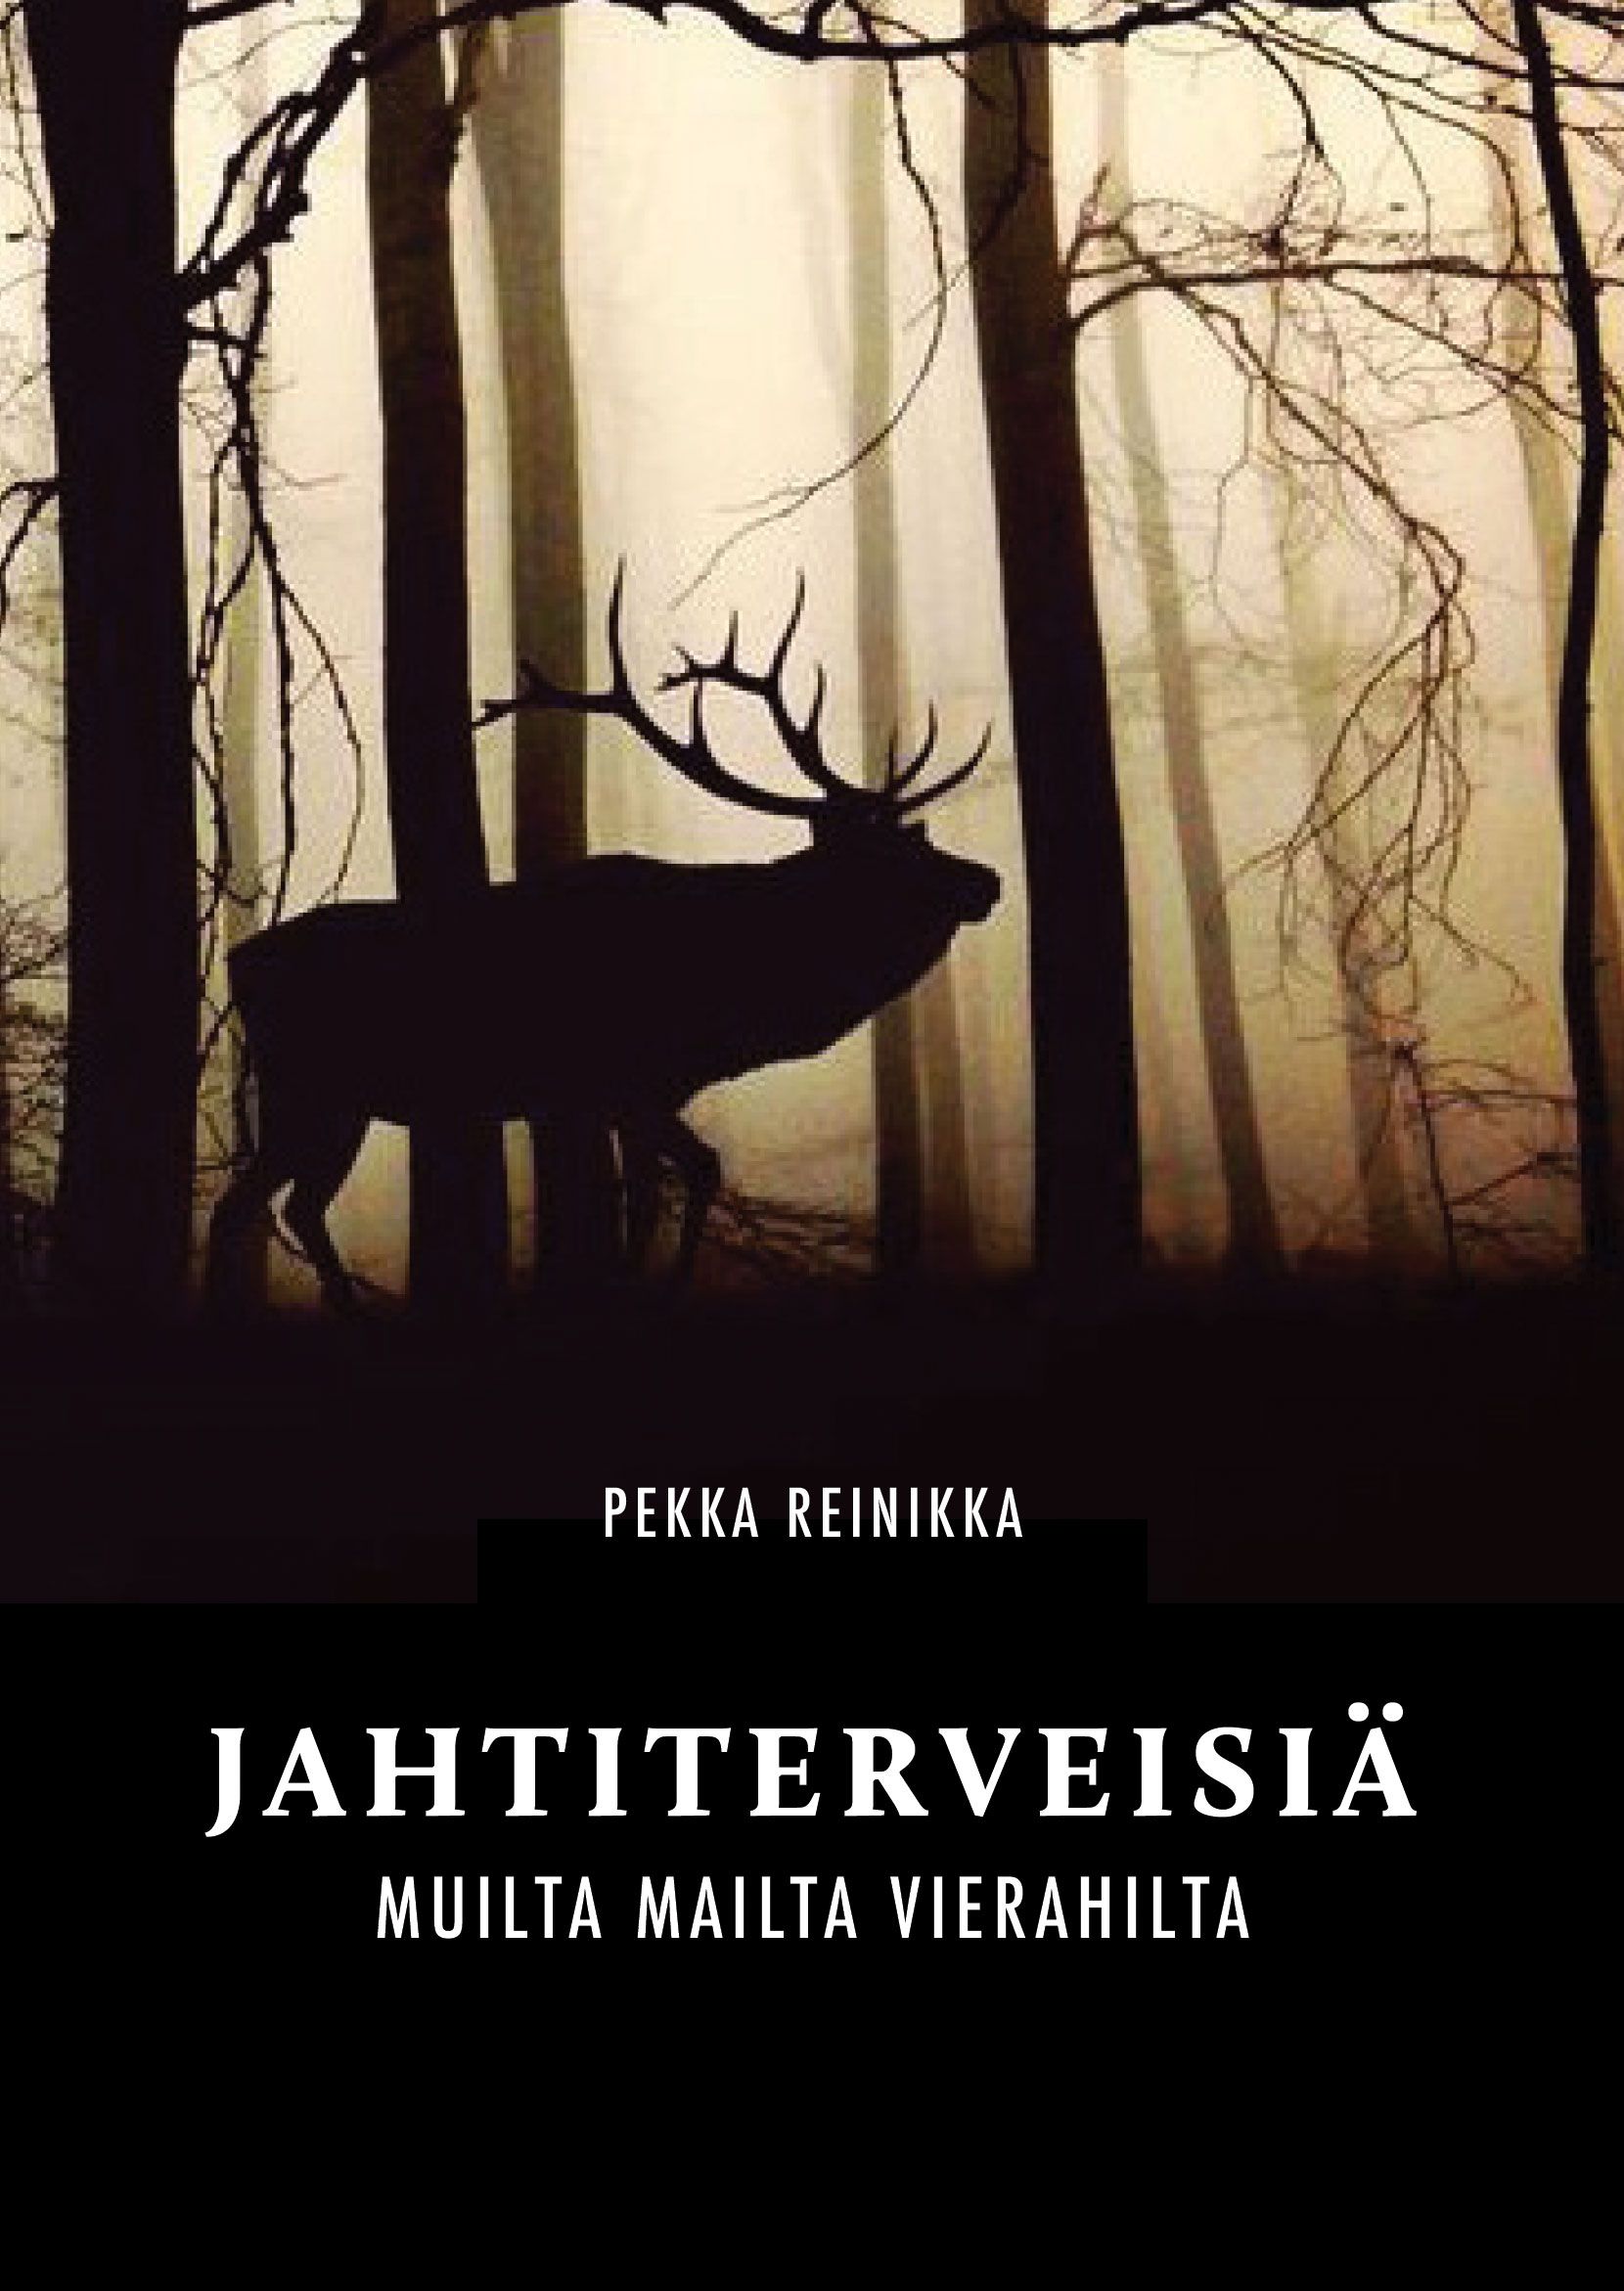 Pekka Reinikka : Jahtiterveisiä